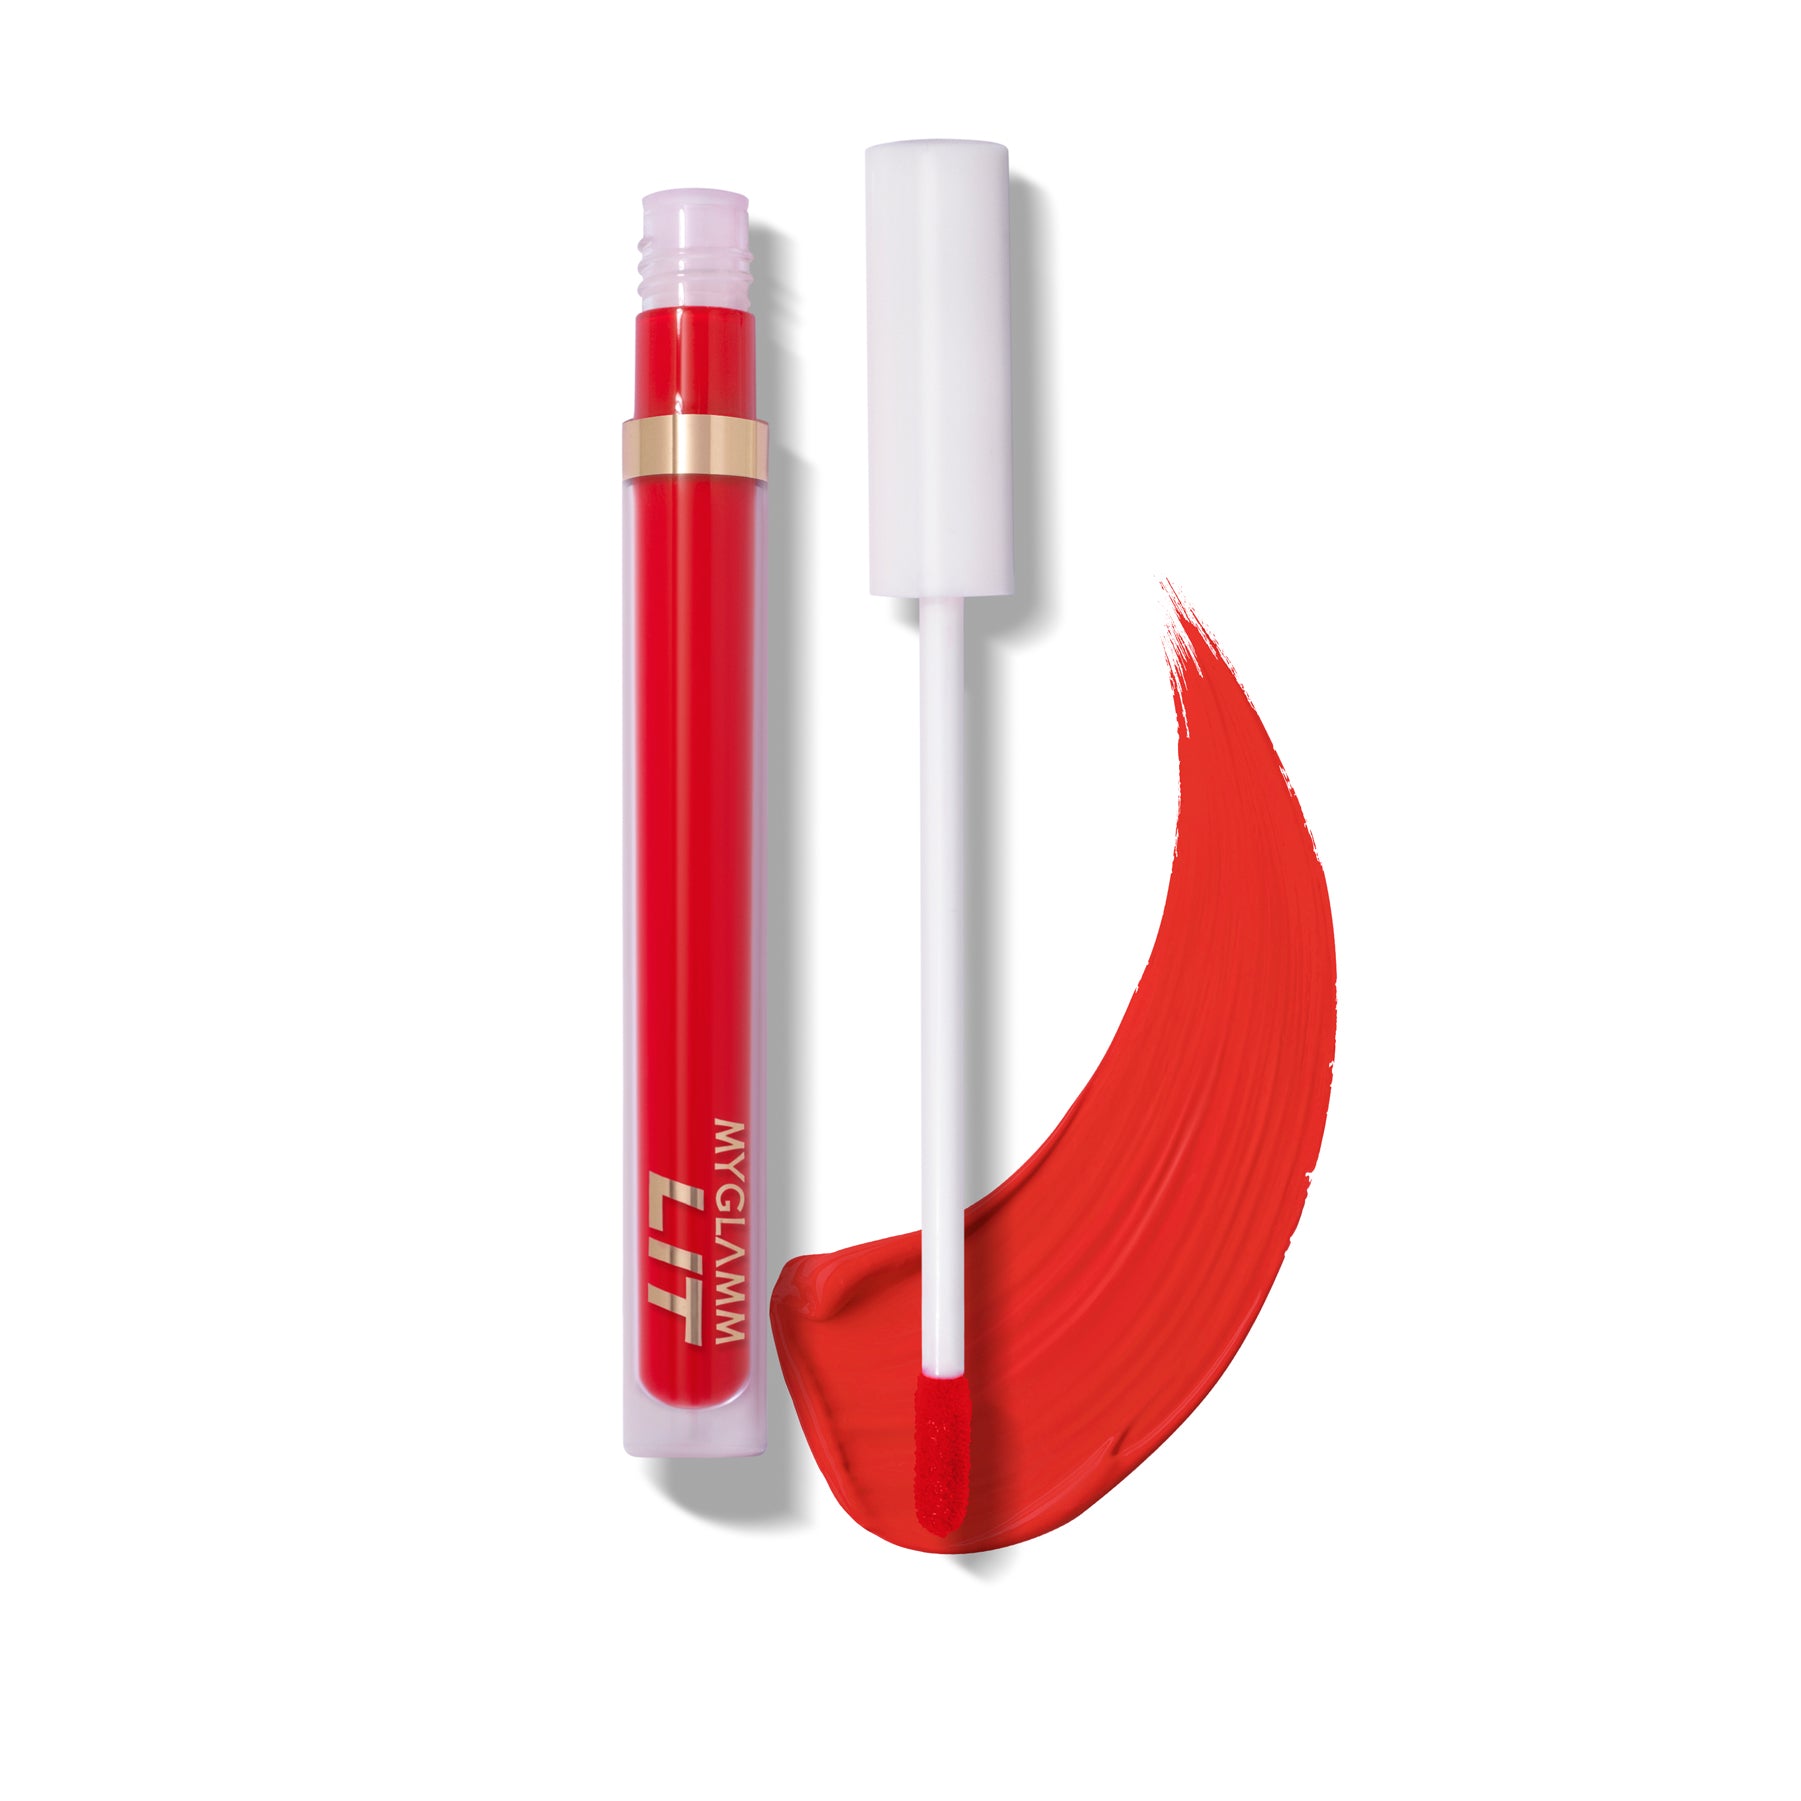 MyGlamm LIT Liquid Matte Lipstick-Snacc-3ml